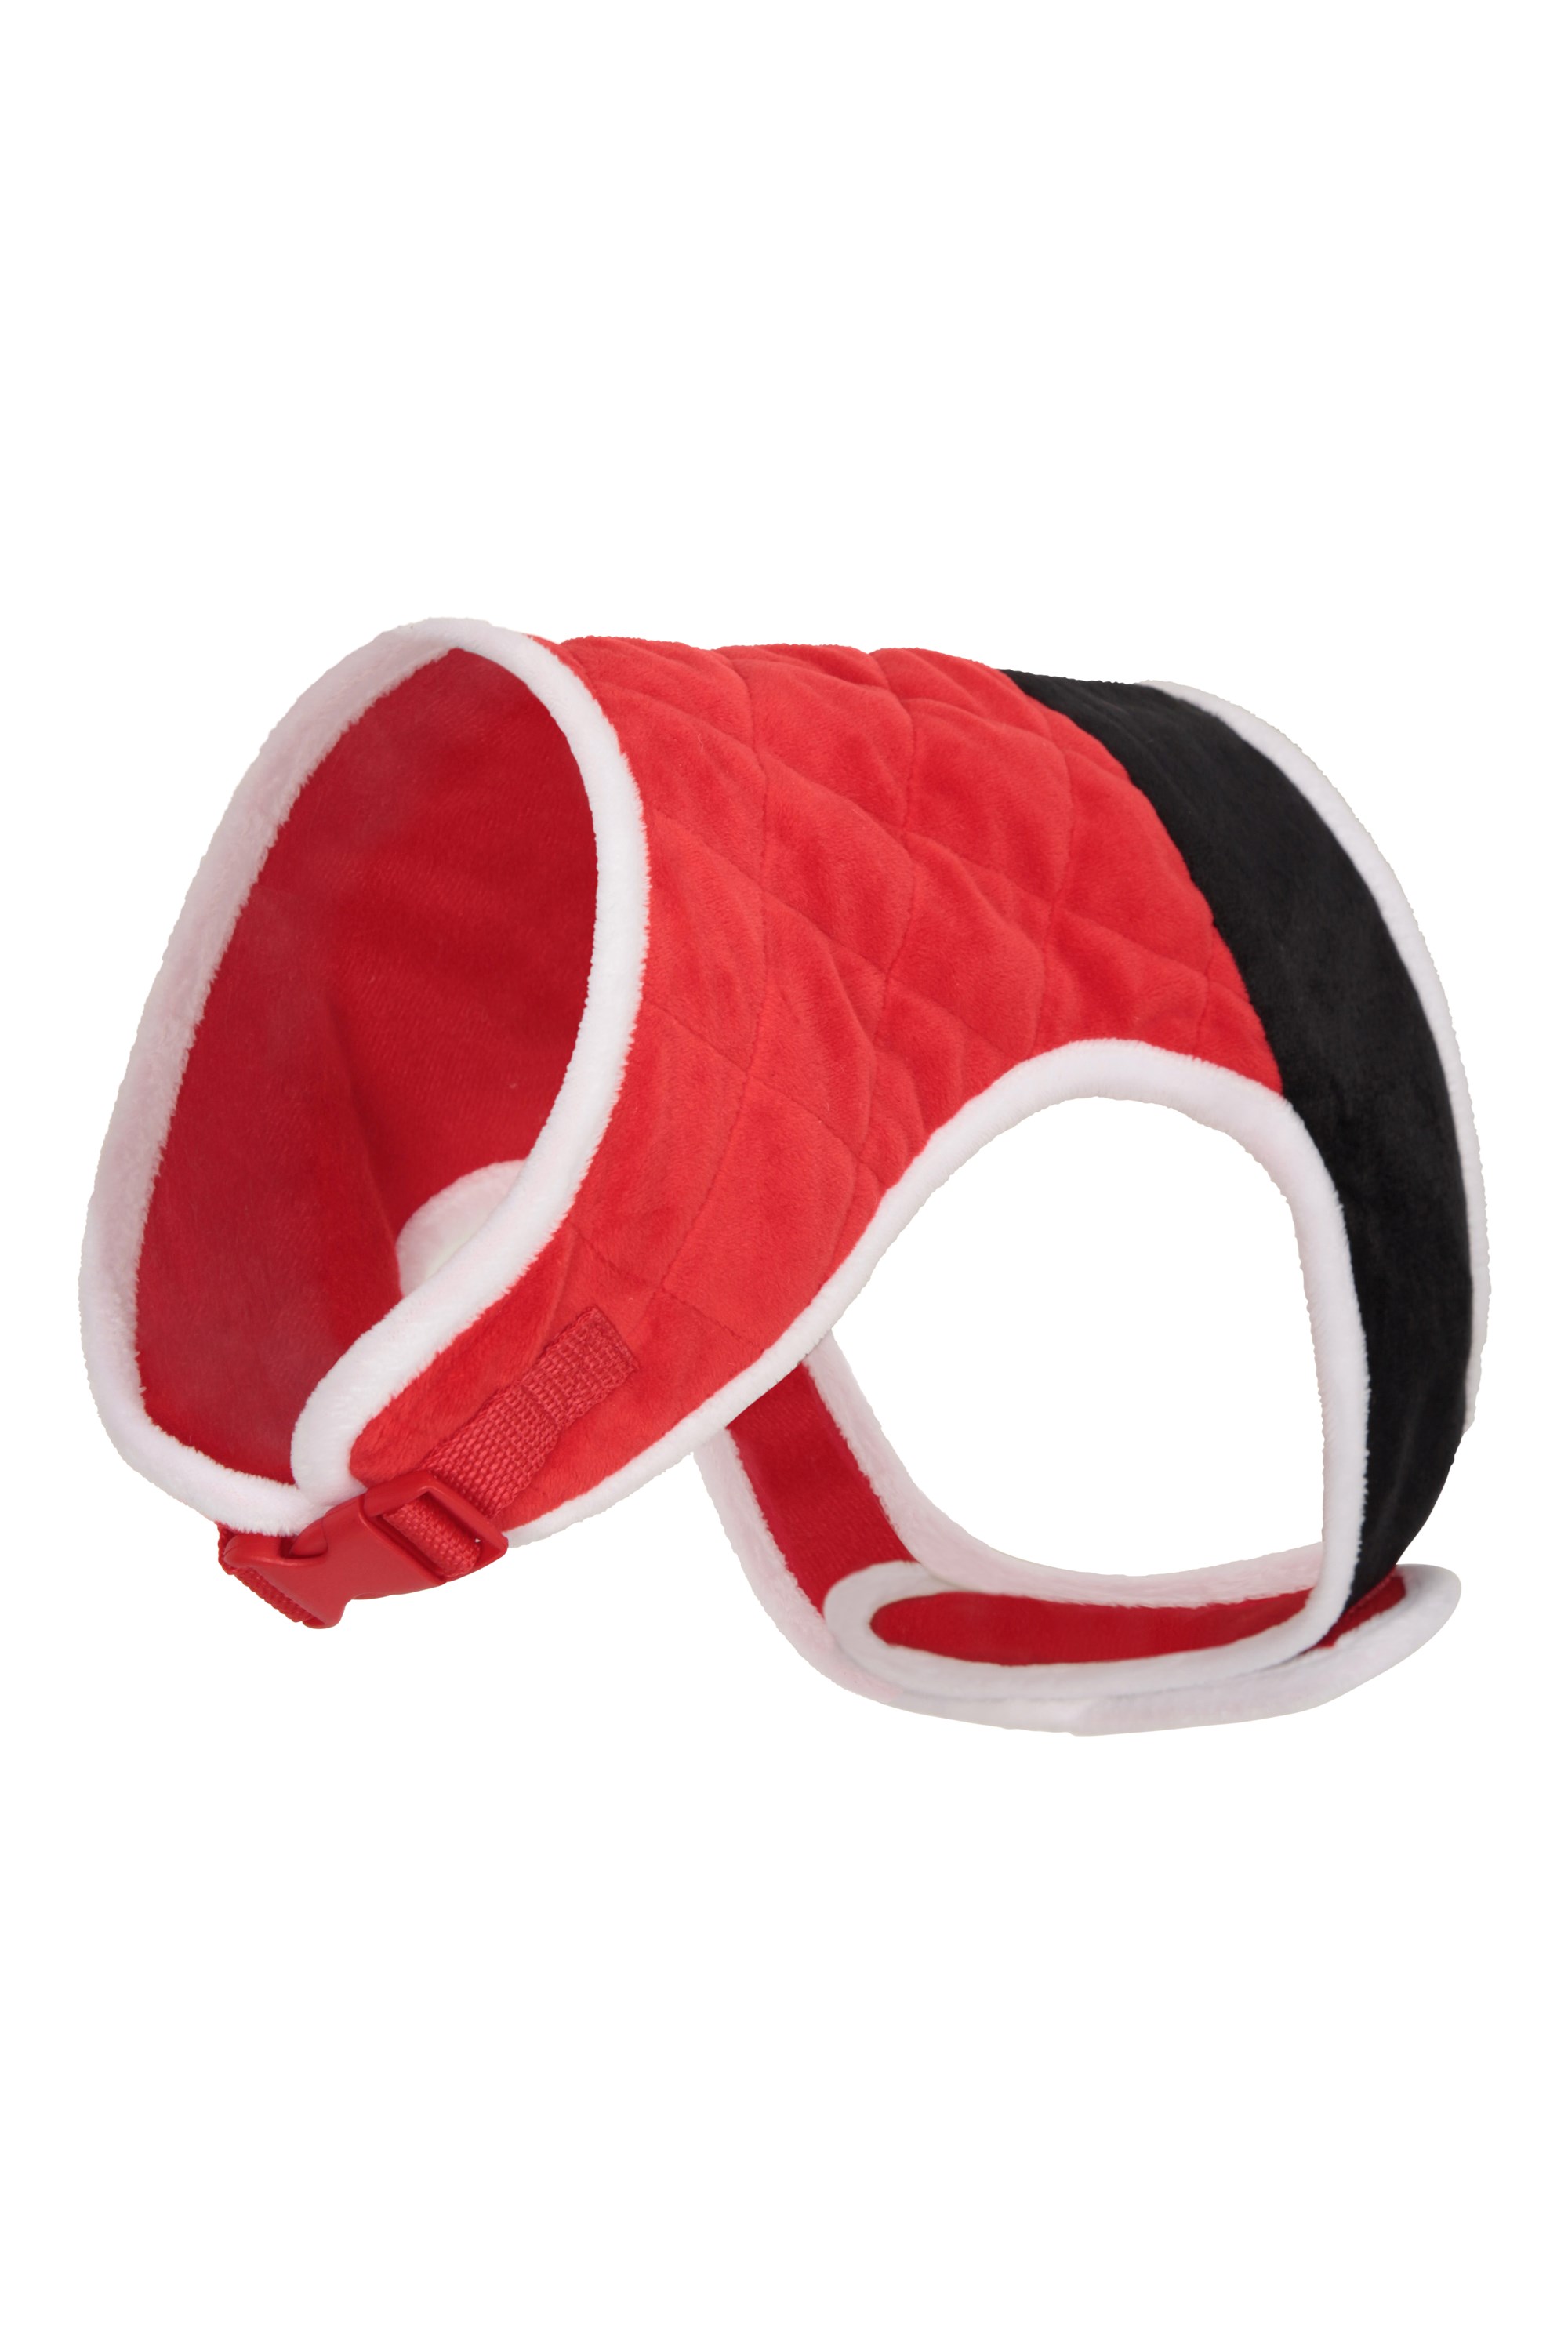 Christmas Dog Harness - Red